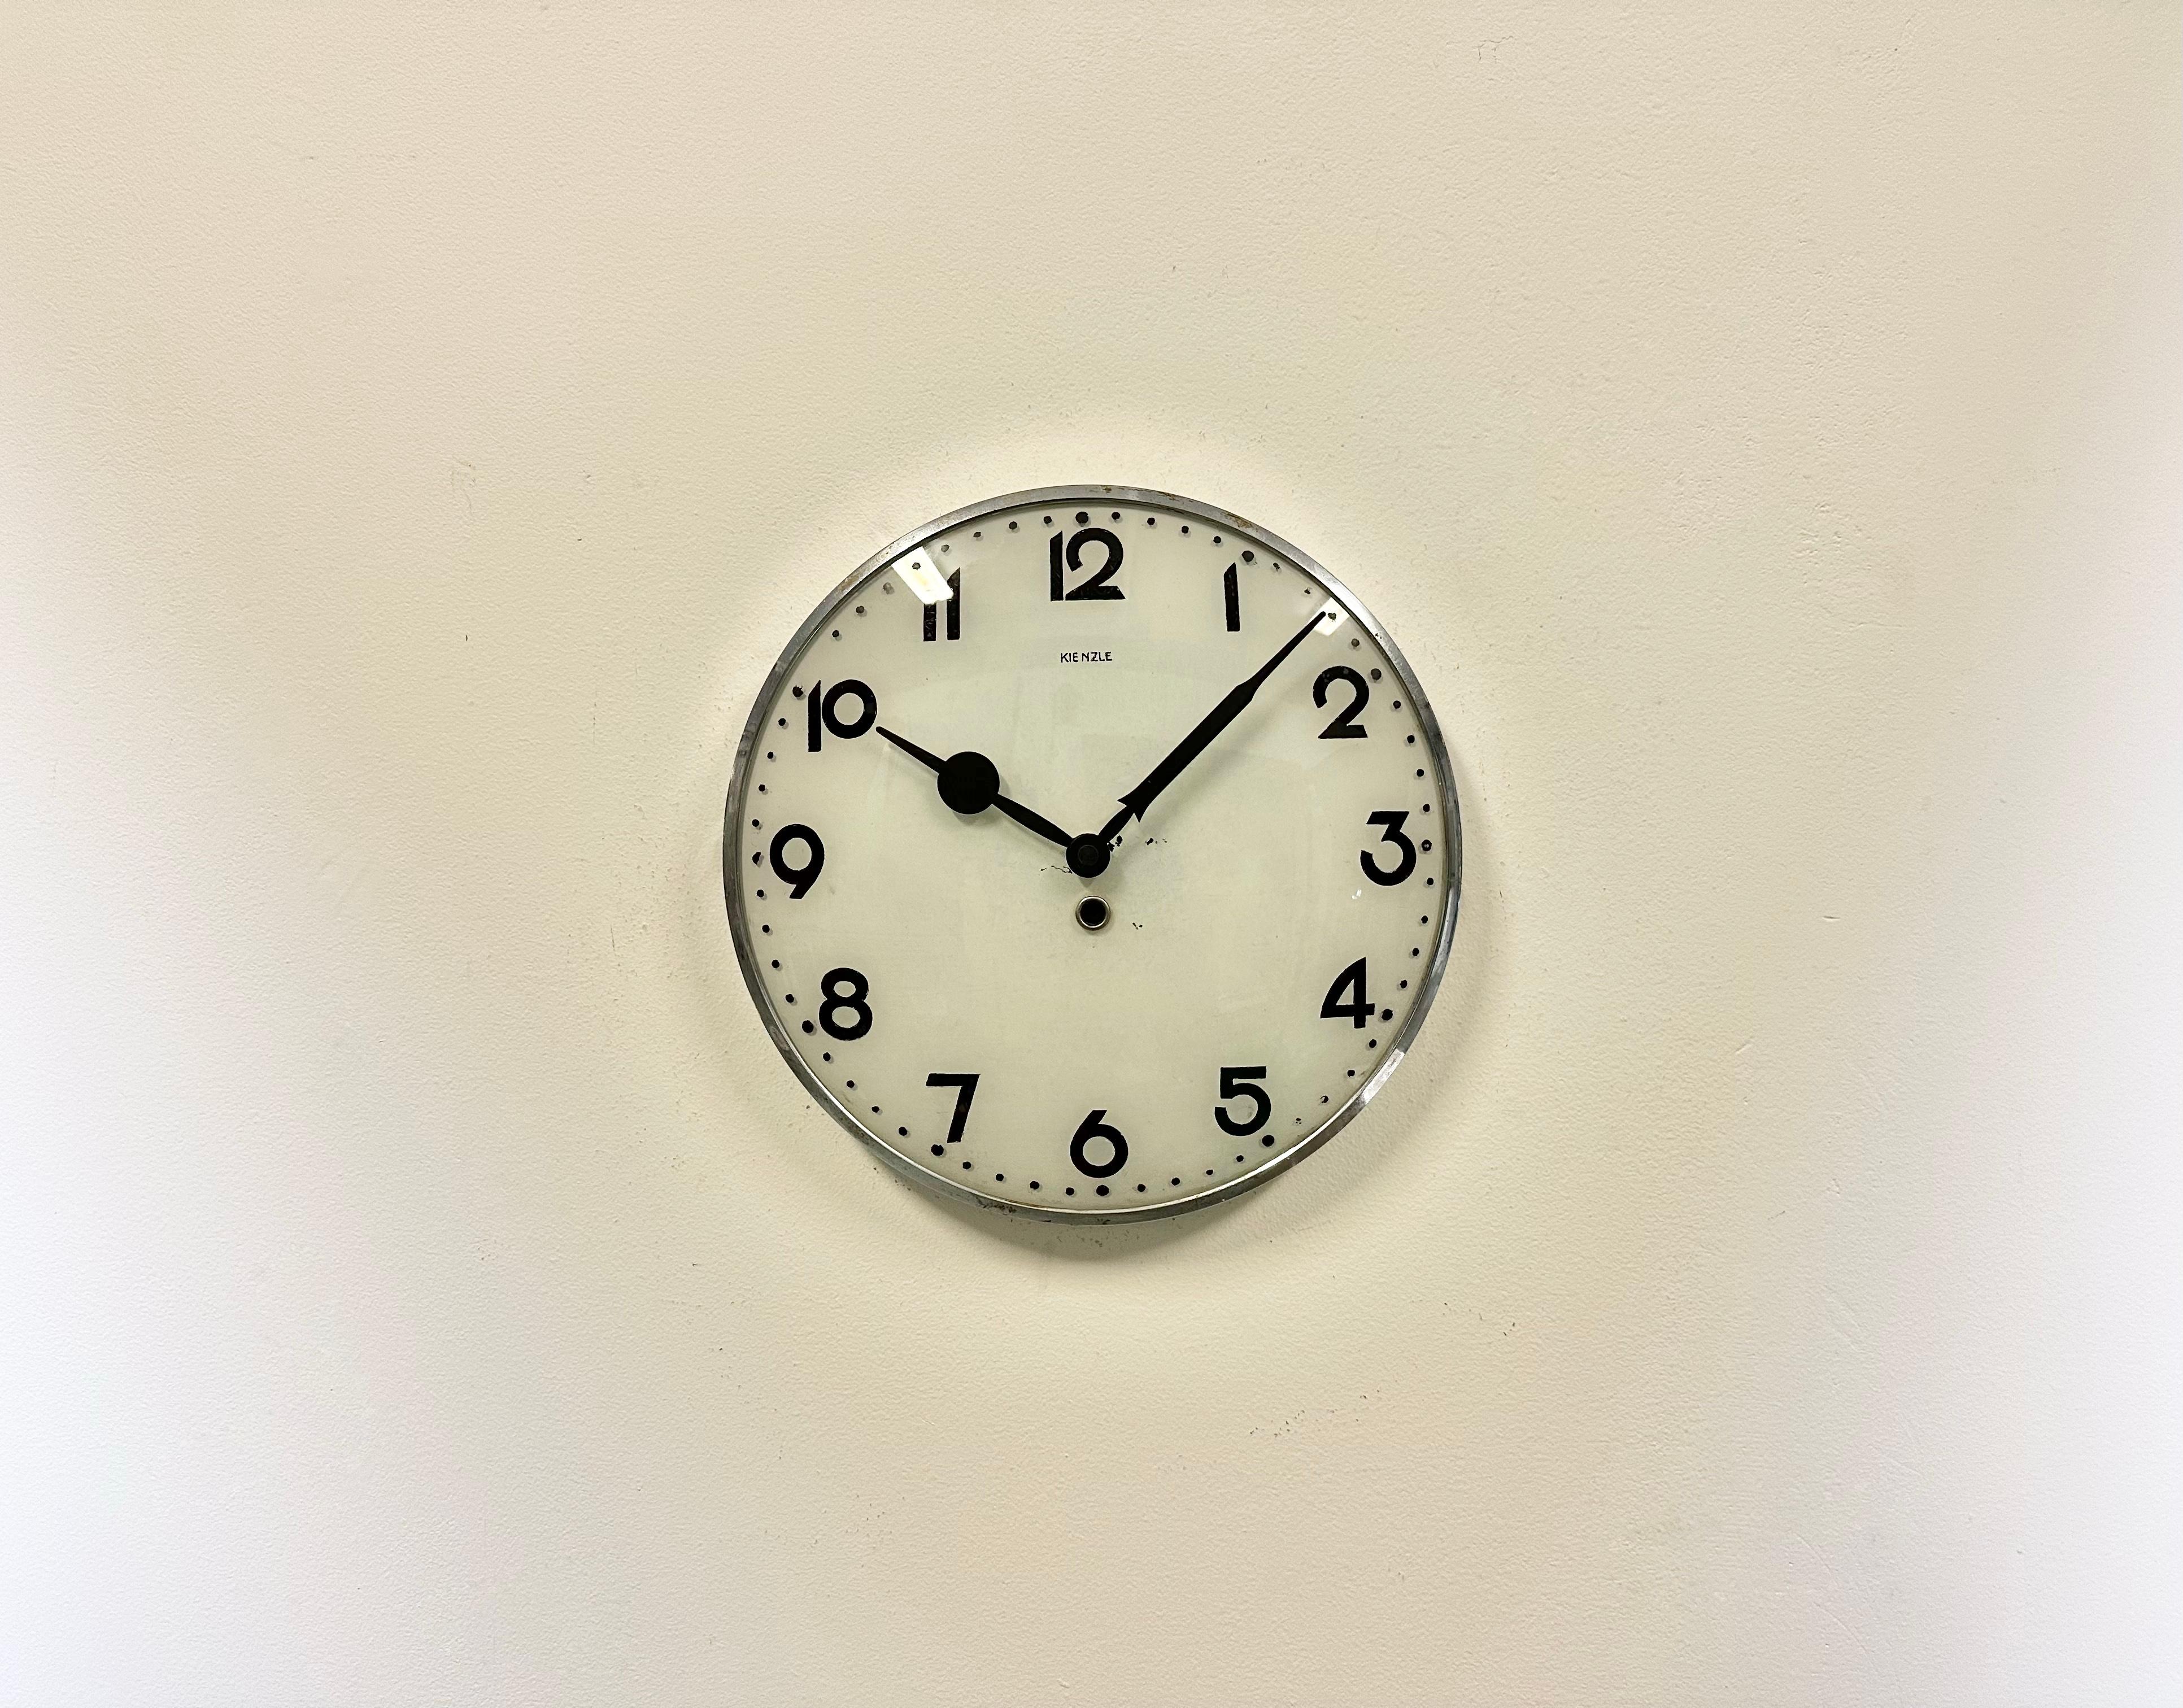 Vintage horloge en fer avec cadran en verre convexe, fabriquée par Kienzle Clock en Allemagne dans les années 1950, convertie en horloge à piles et nécessitant une seule pile AA. Mesures : Diamètre 30 cm. Le poids de l'horloge est de 1,2 kg.